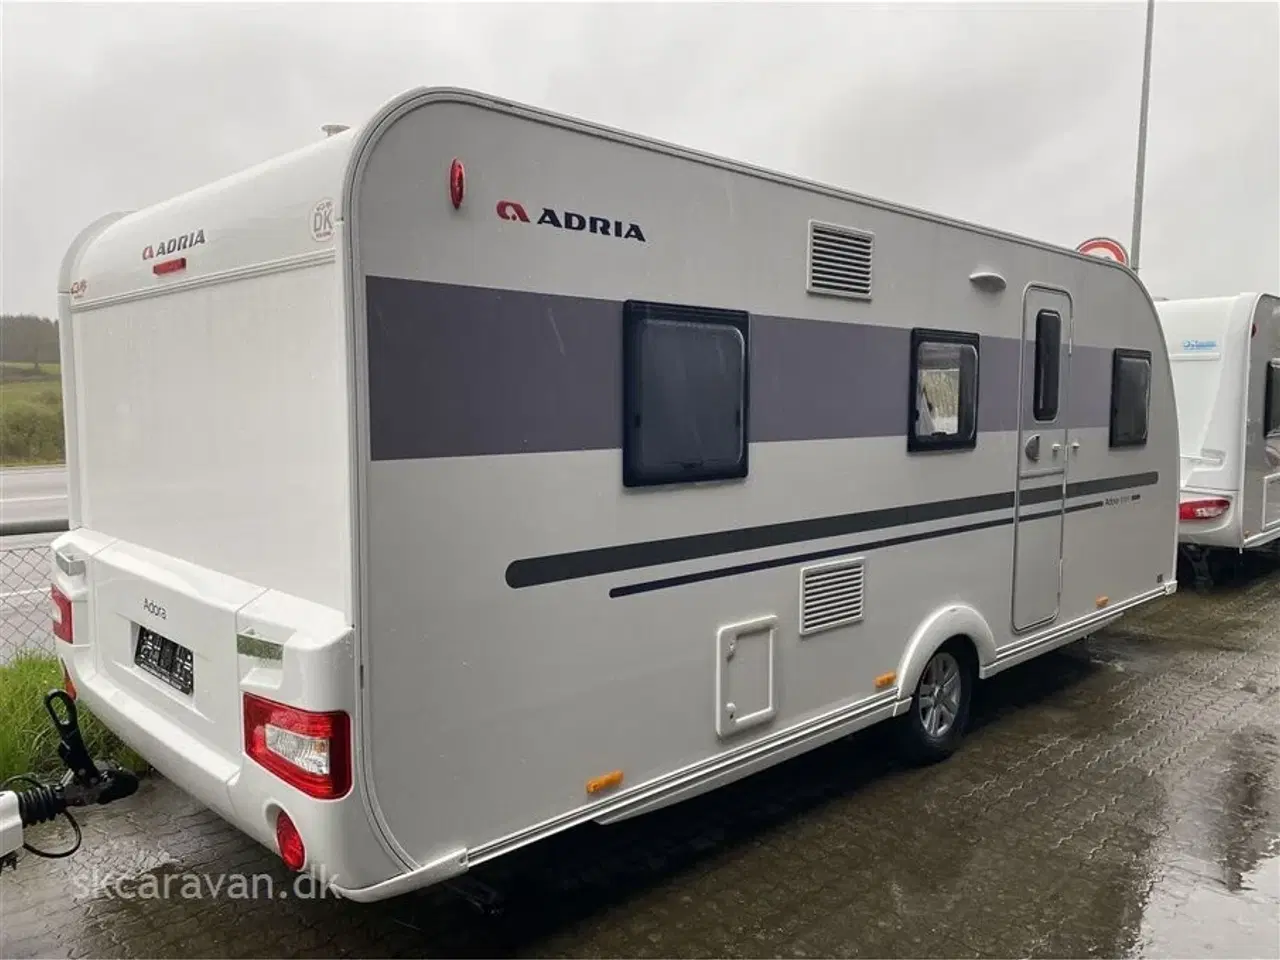 Billede 3 - 2020 - Adria Adora 573 PT   MEGET Pæn og velholdt campingvogn